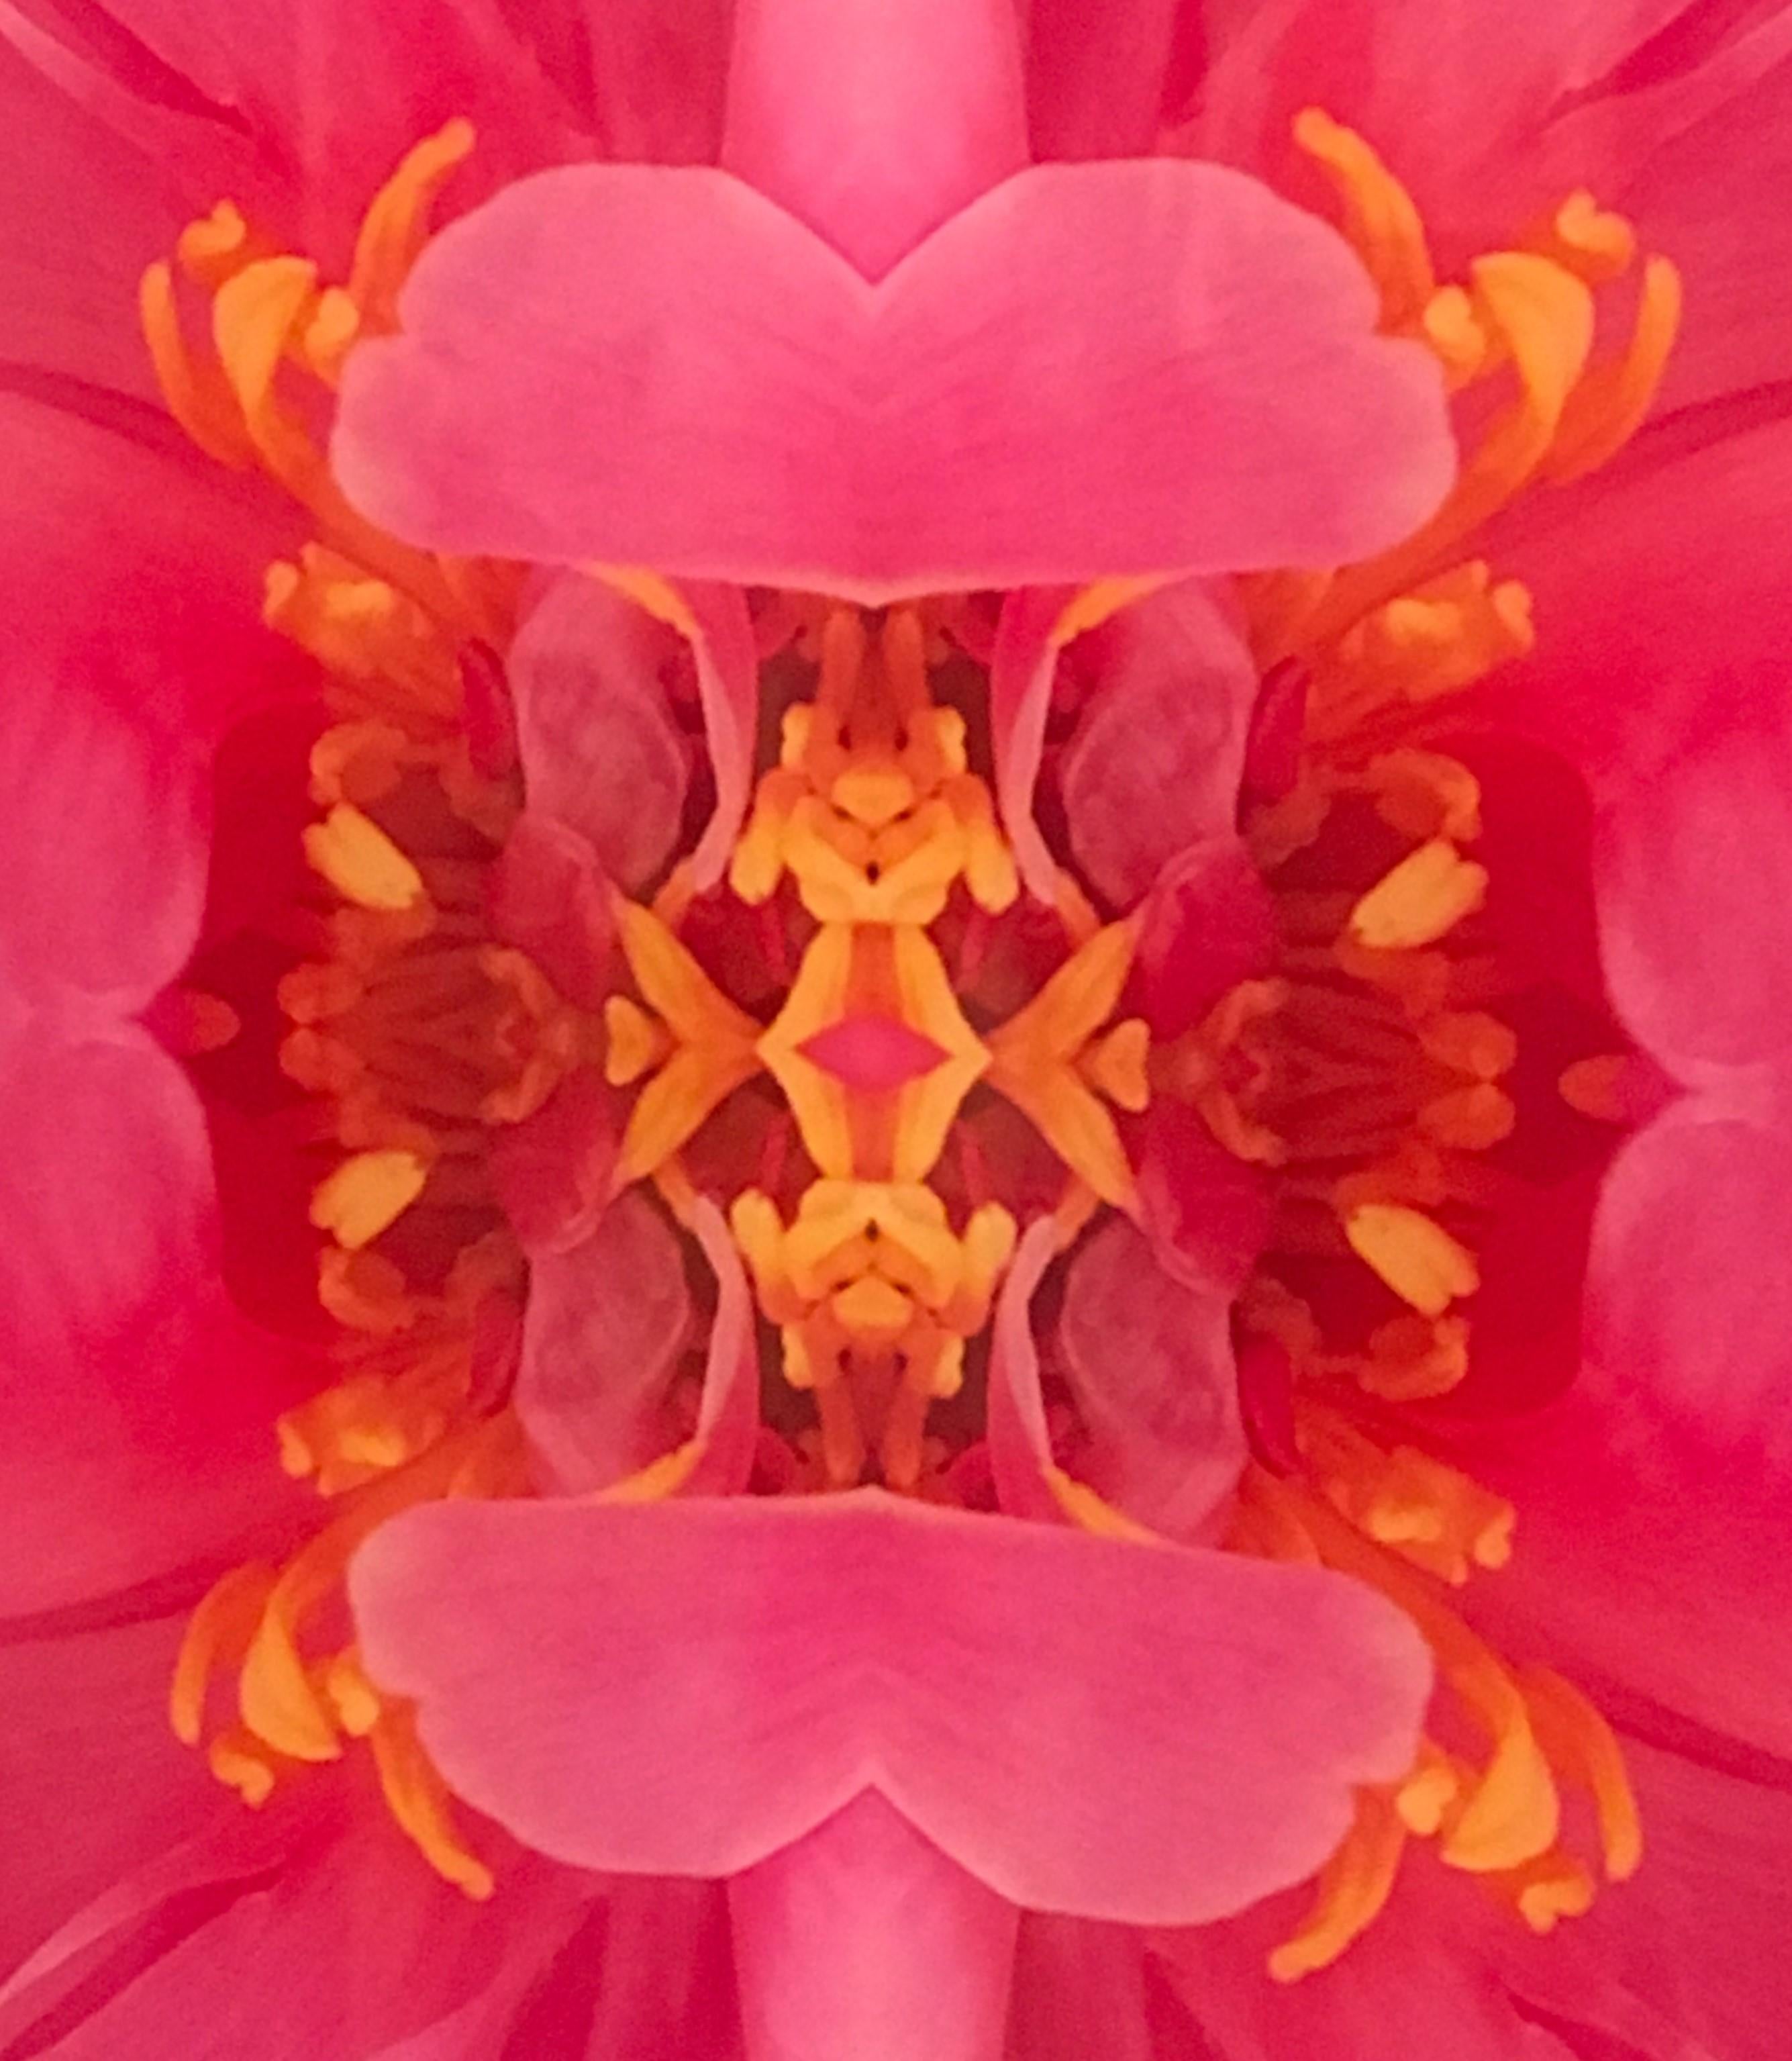 Dazel III, Farbfotografie, Blumen, Blumen im Blumenstil, Botanik, Rosa (Pink), Color Photograph, von Rebecca Swanson